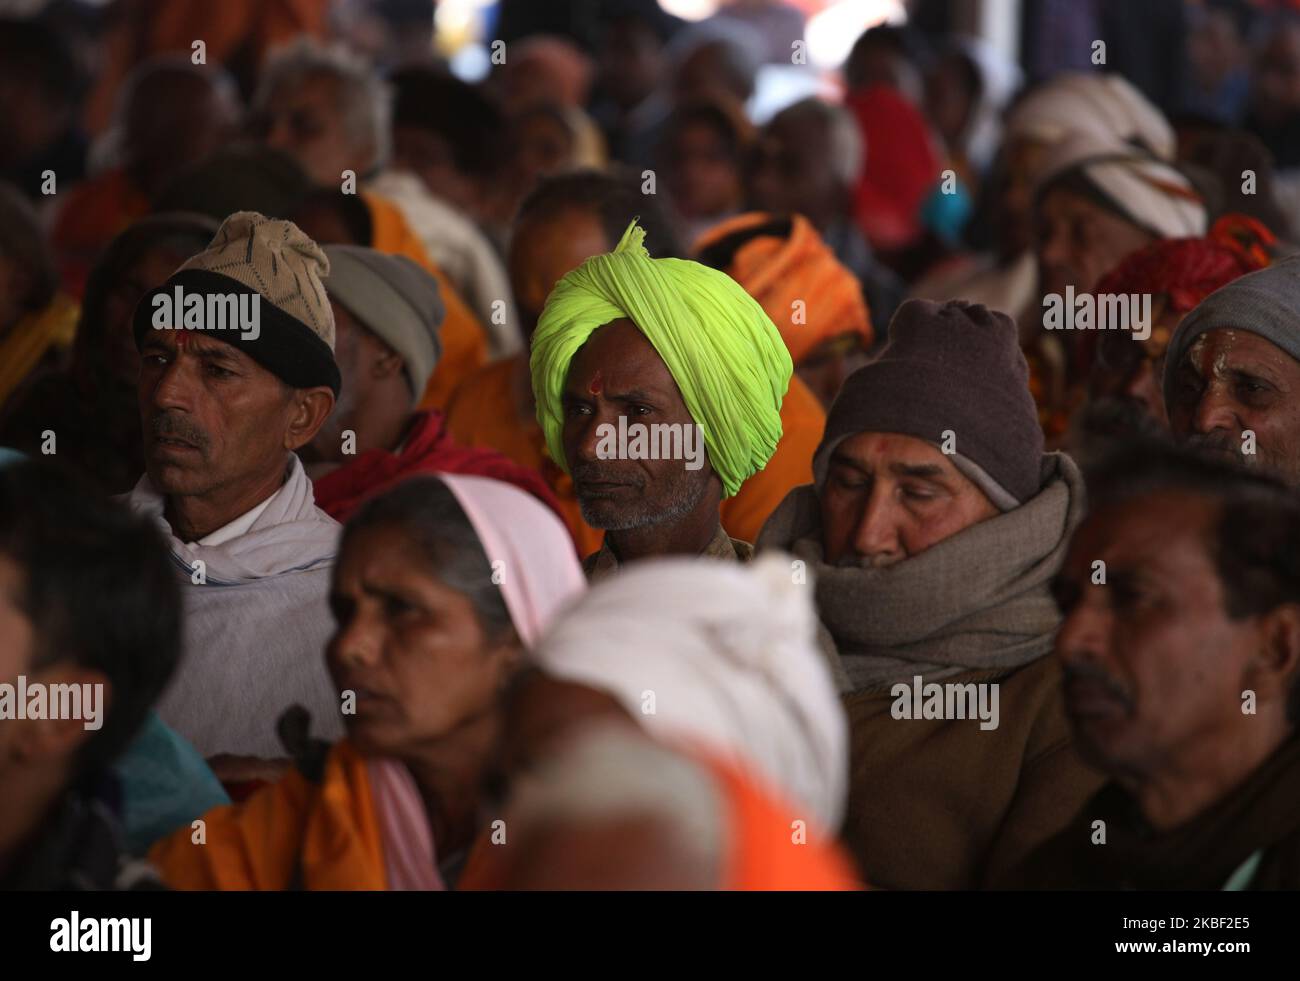 Die Menschen hören die Rede der Heiligen während eines Heiligen Gipfels in Magh Mela Festival, Allahabad am 21. Januar 2020. (Foto von Ritesh Shukla/NurPhoto) Stockfoto